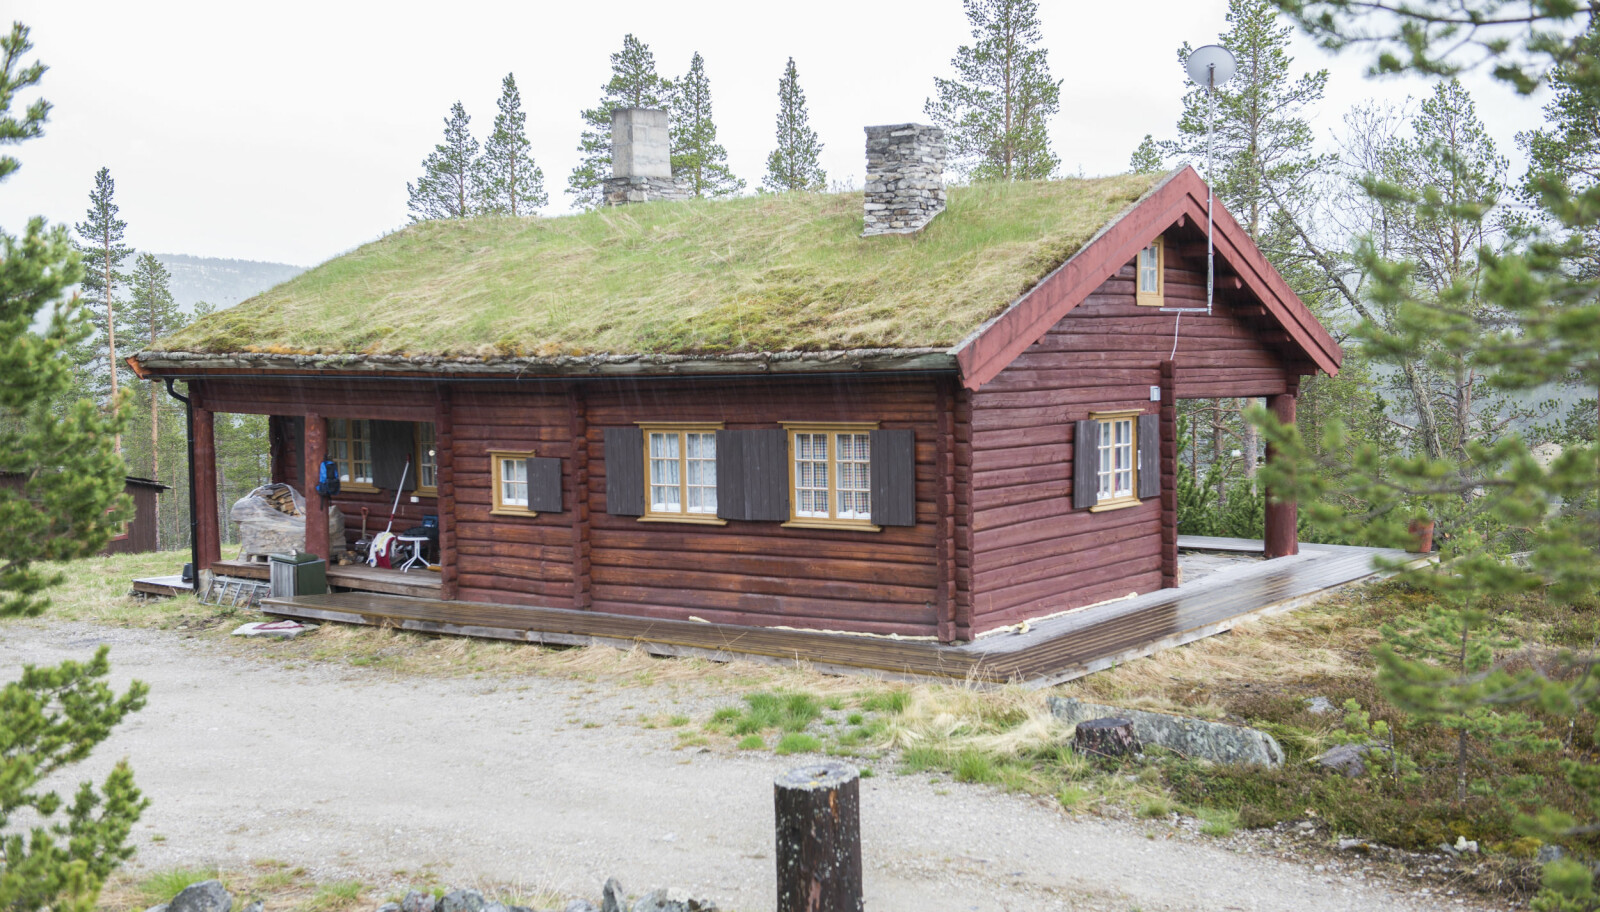 <b>ANKERFESTE:</b> I denne hytta bodde Marit Øvergaard Erichsen under krigen. Med dekknavnet "Tante" ble hun et ankerfeste for Lingekarene som holdt seg skjult i fjellet.